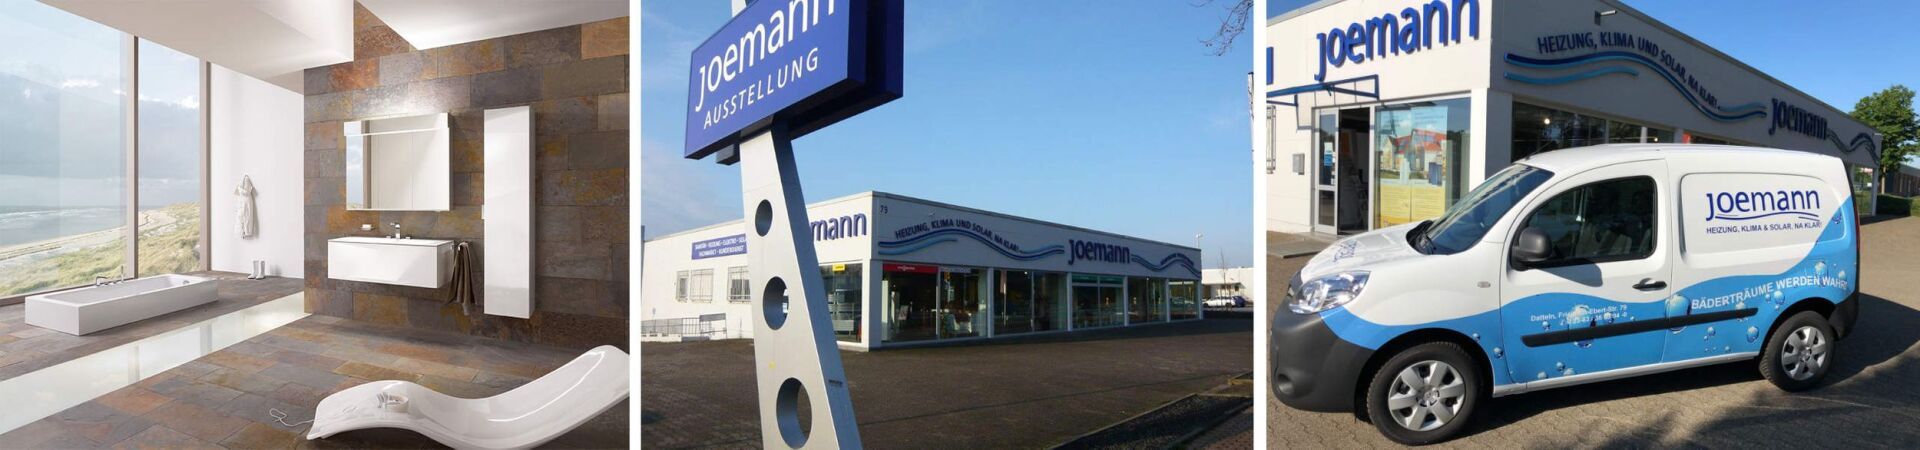 Joemann GmbH | Sanitärinstallation